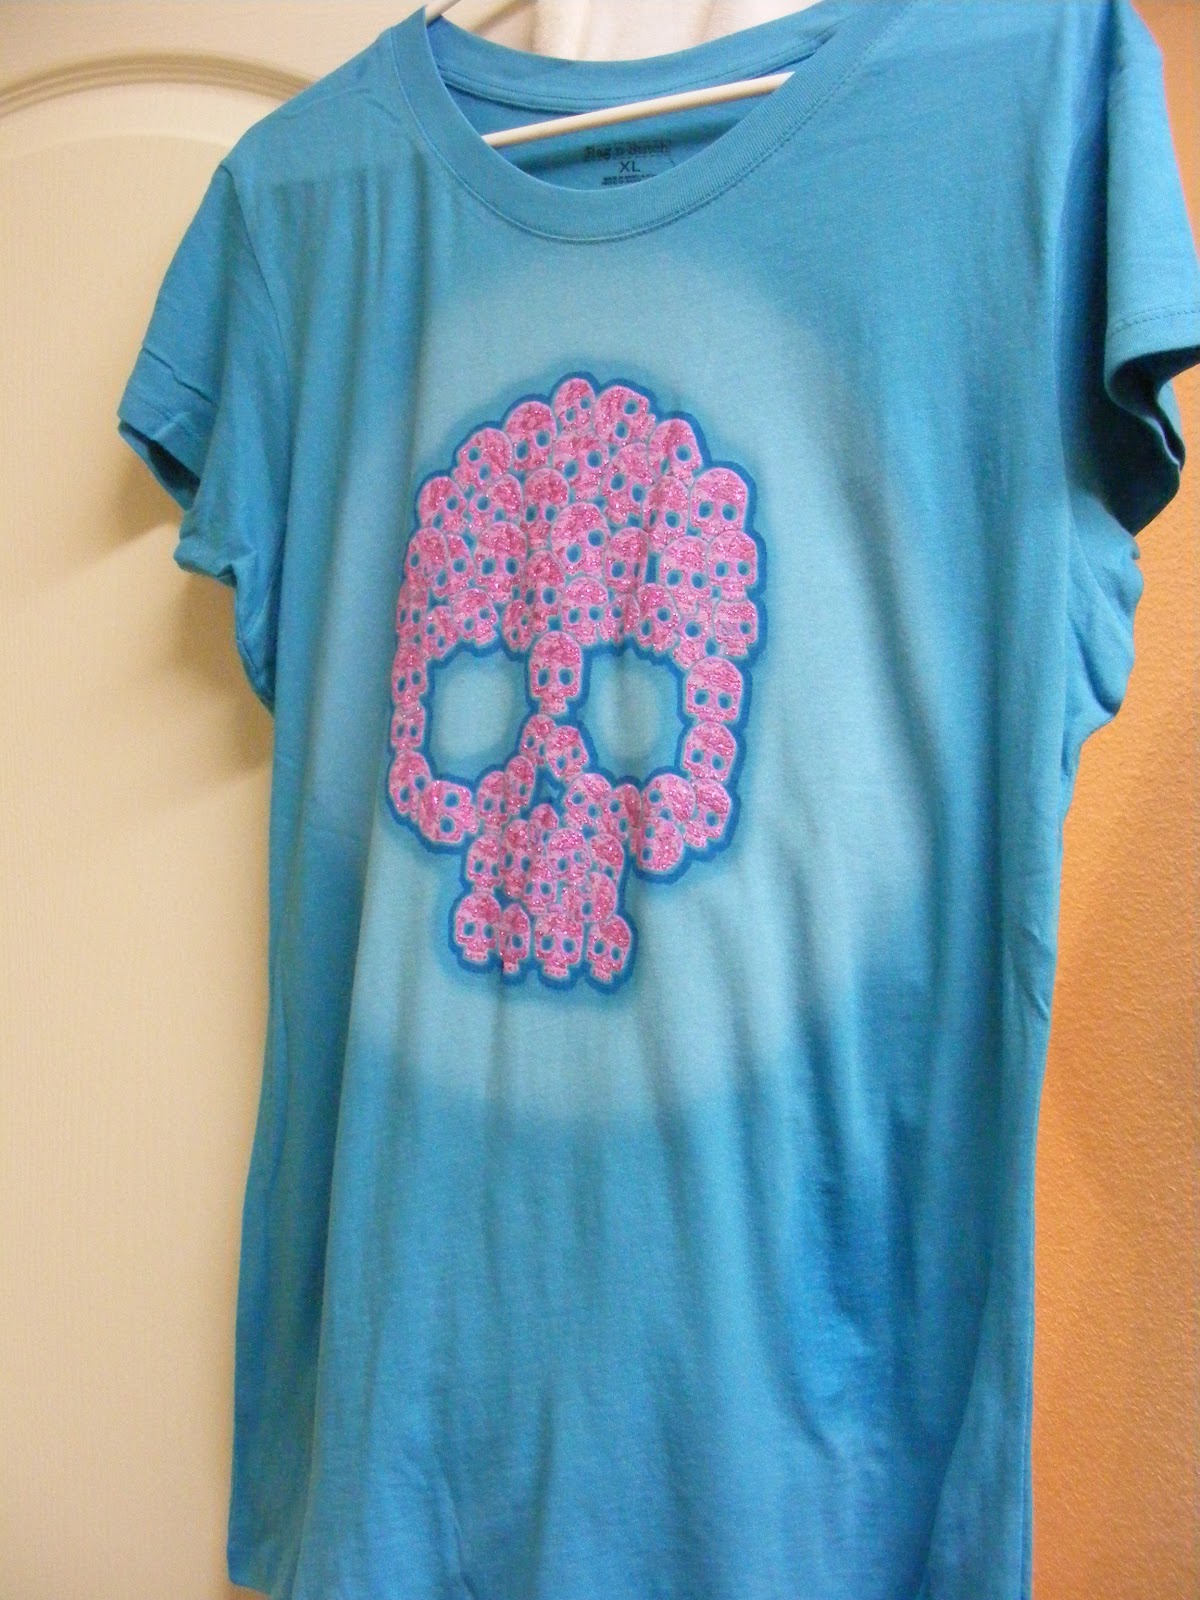 I Still Wear Pink: A Skull Of Skulls T-Shirt From Walmart